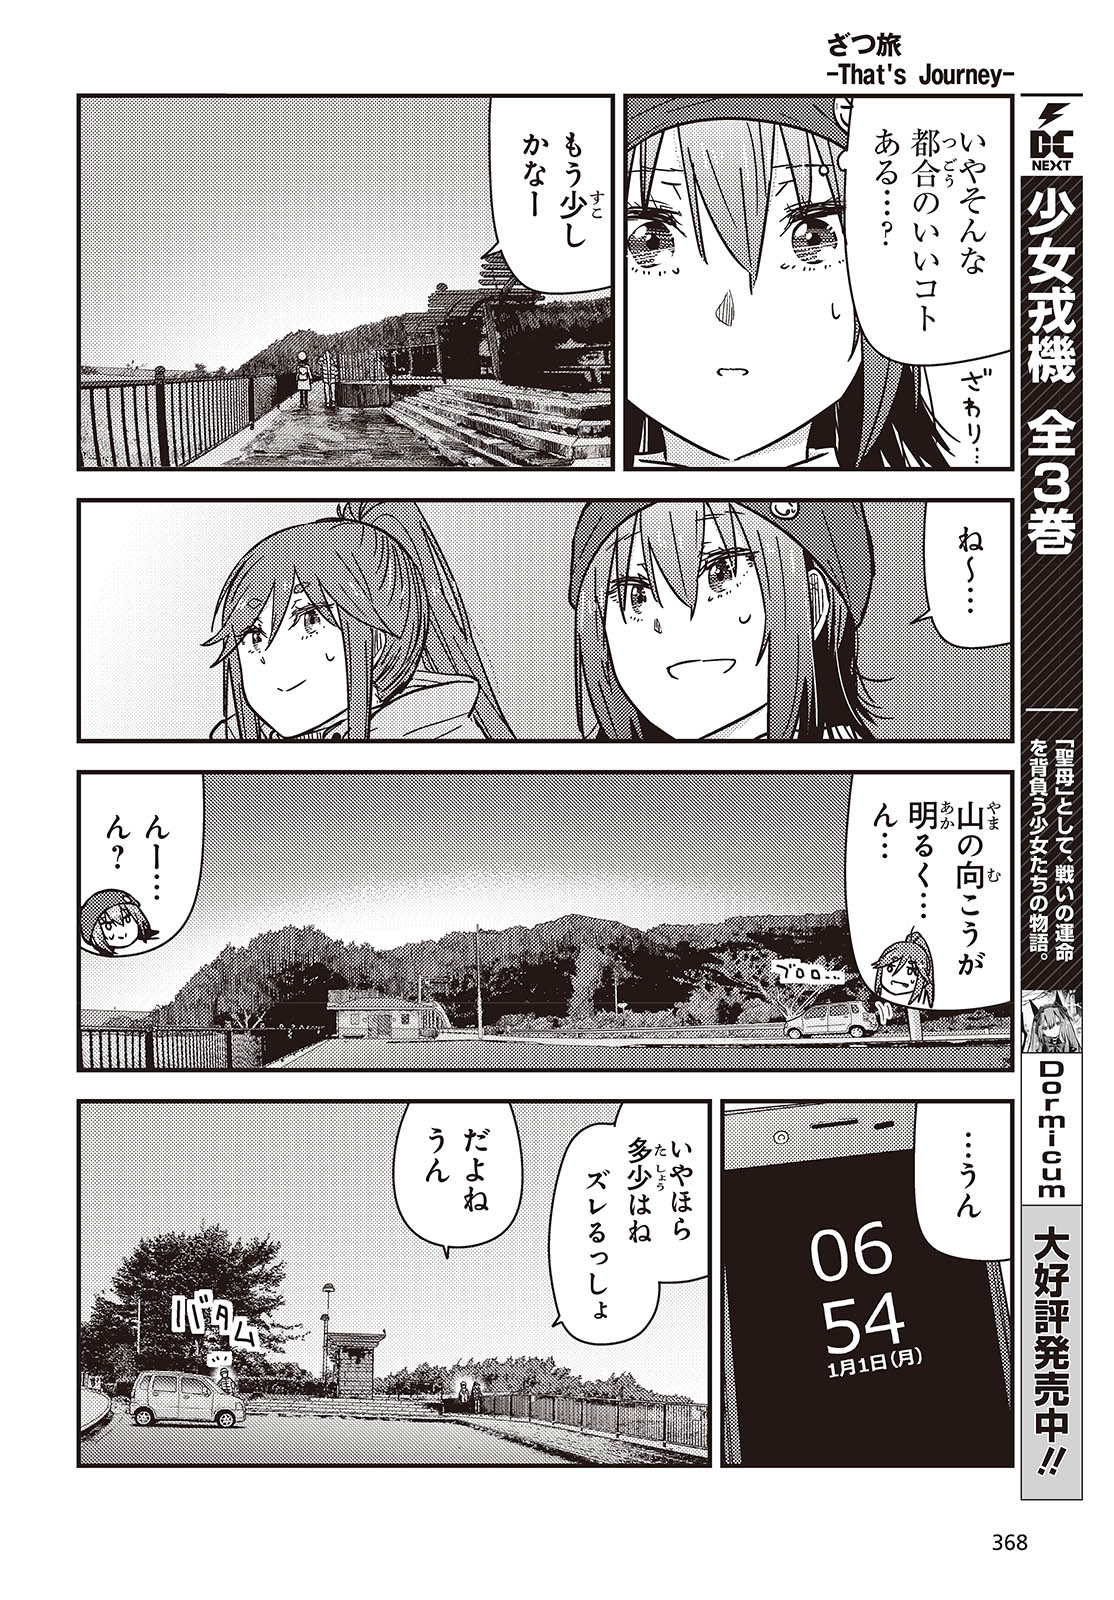 ざつ旅-That's Journey- 第37話 - Page 12